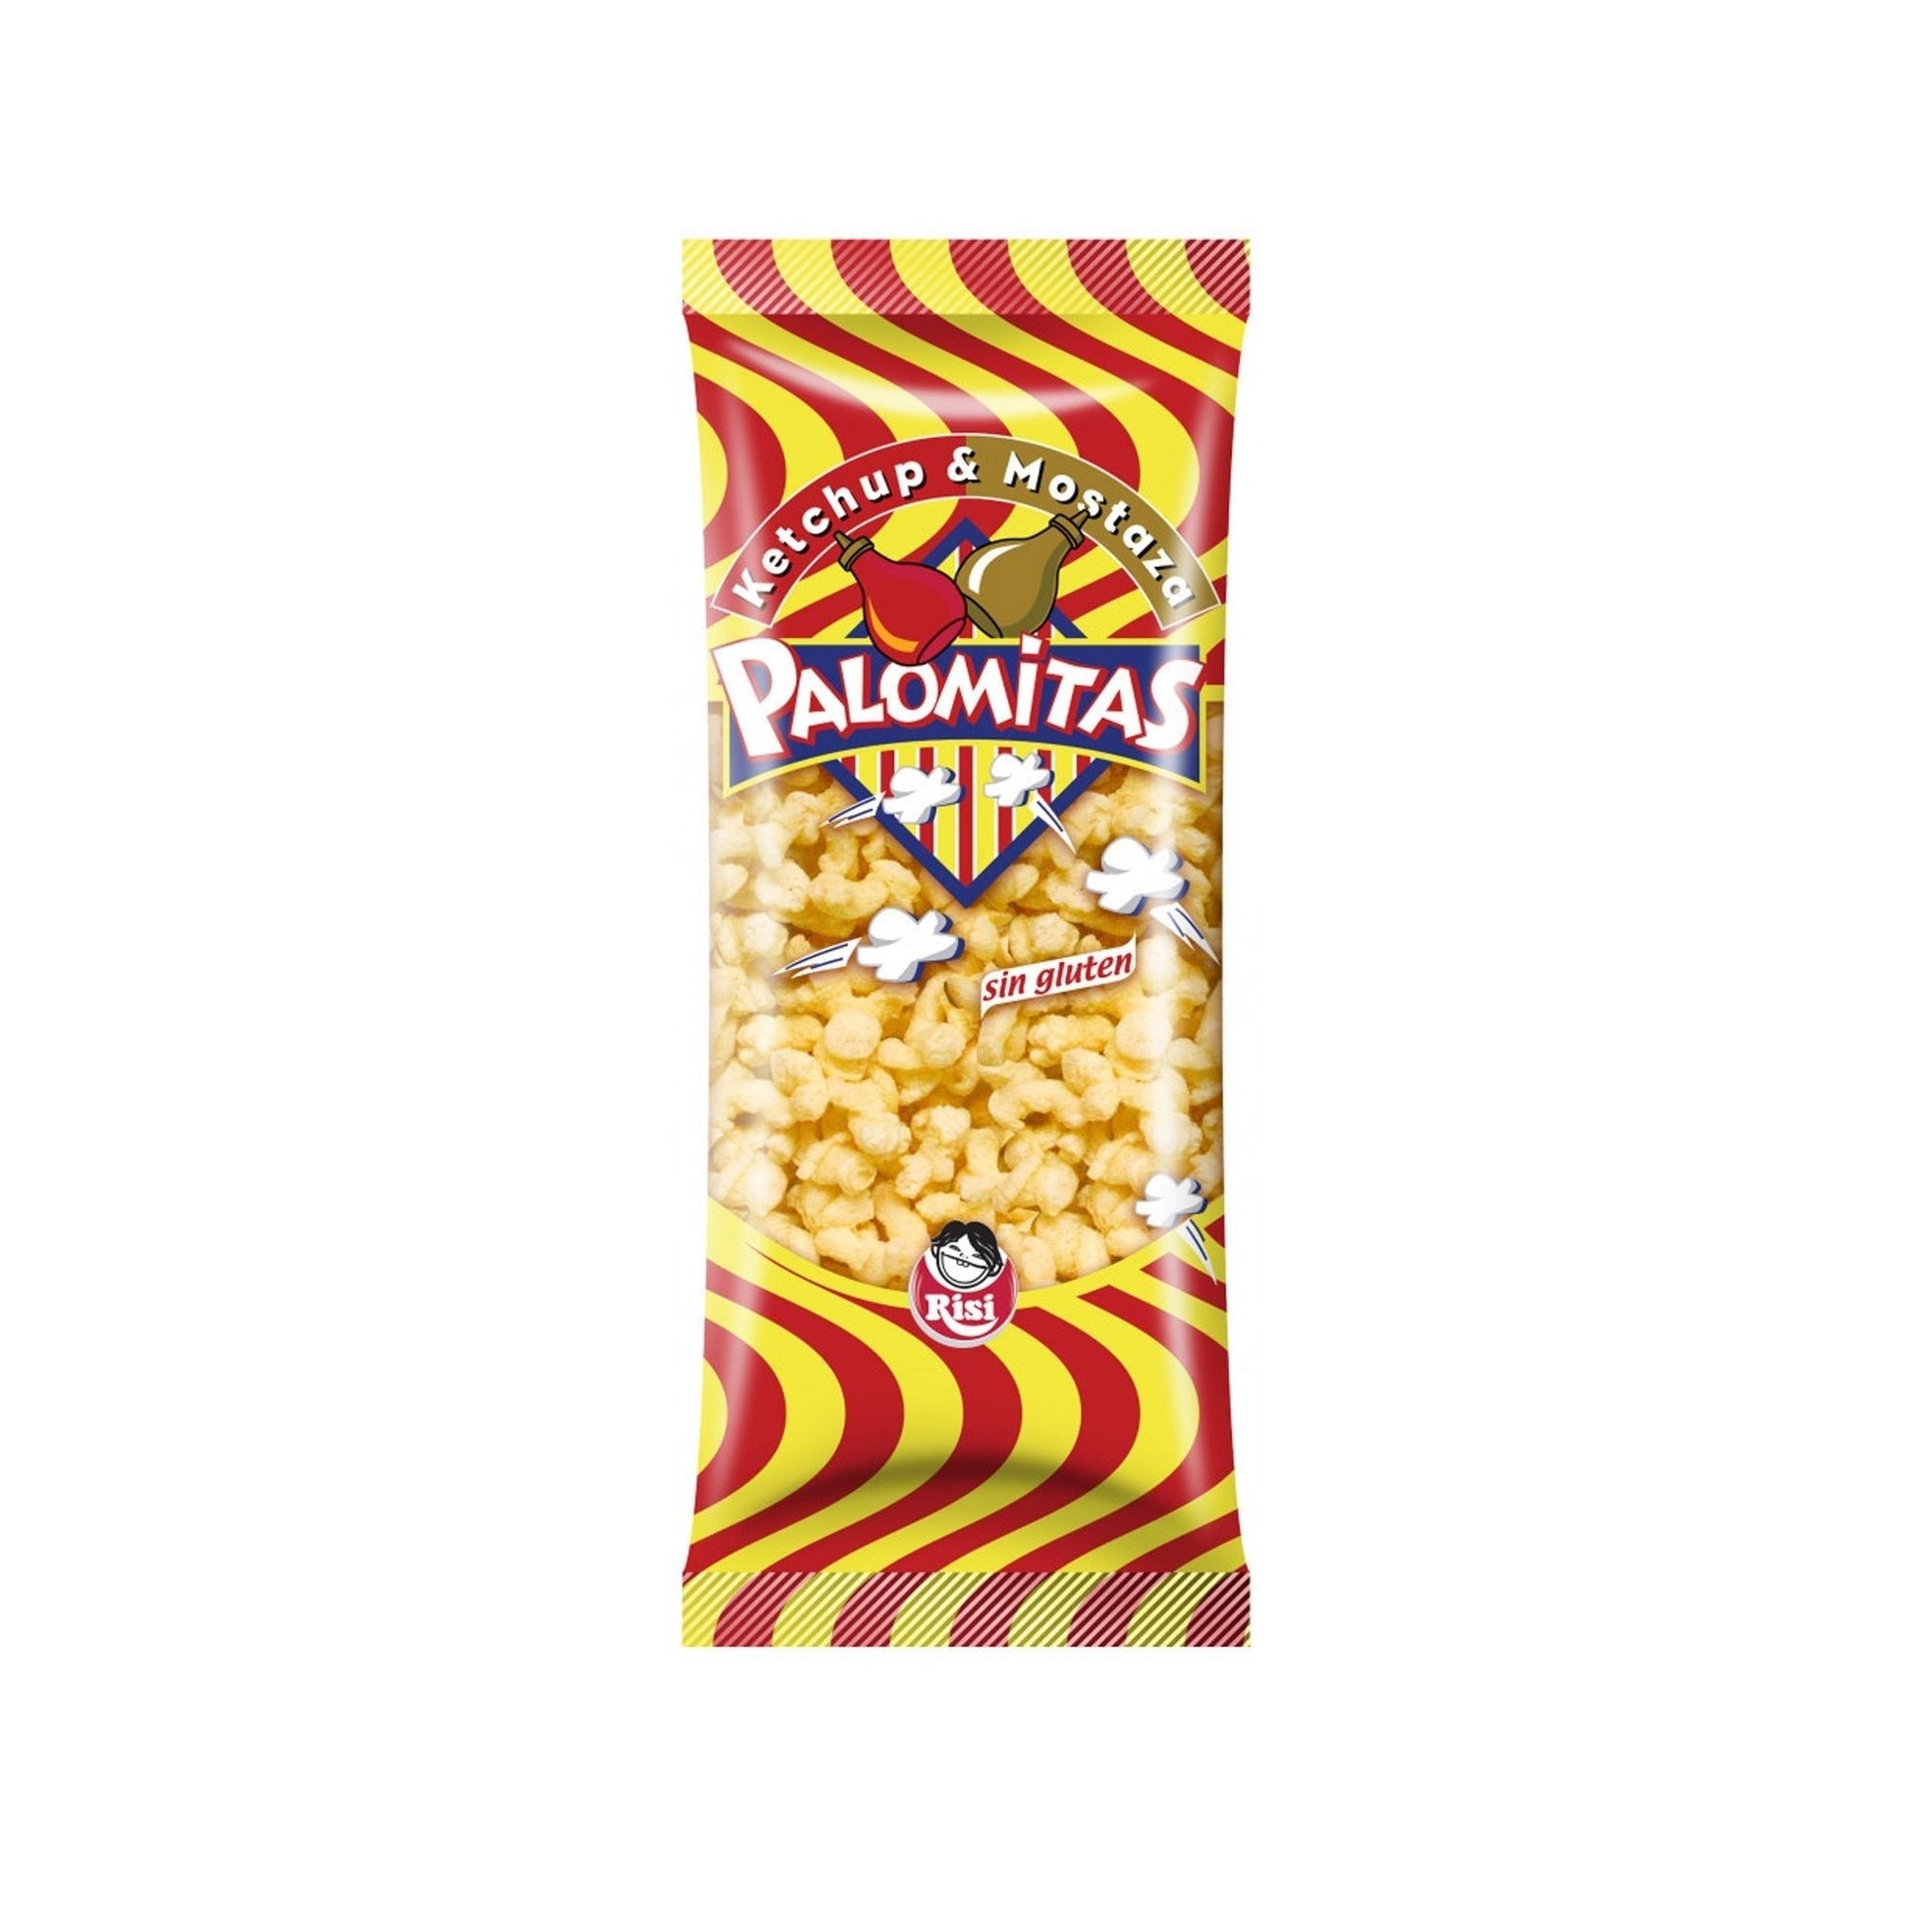 Palomitas Risi - Mono Banano